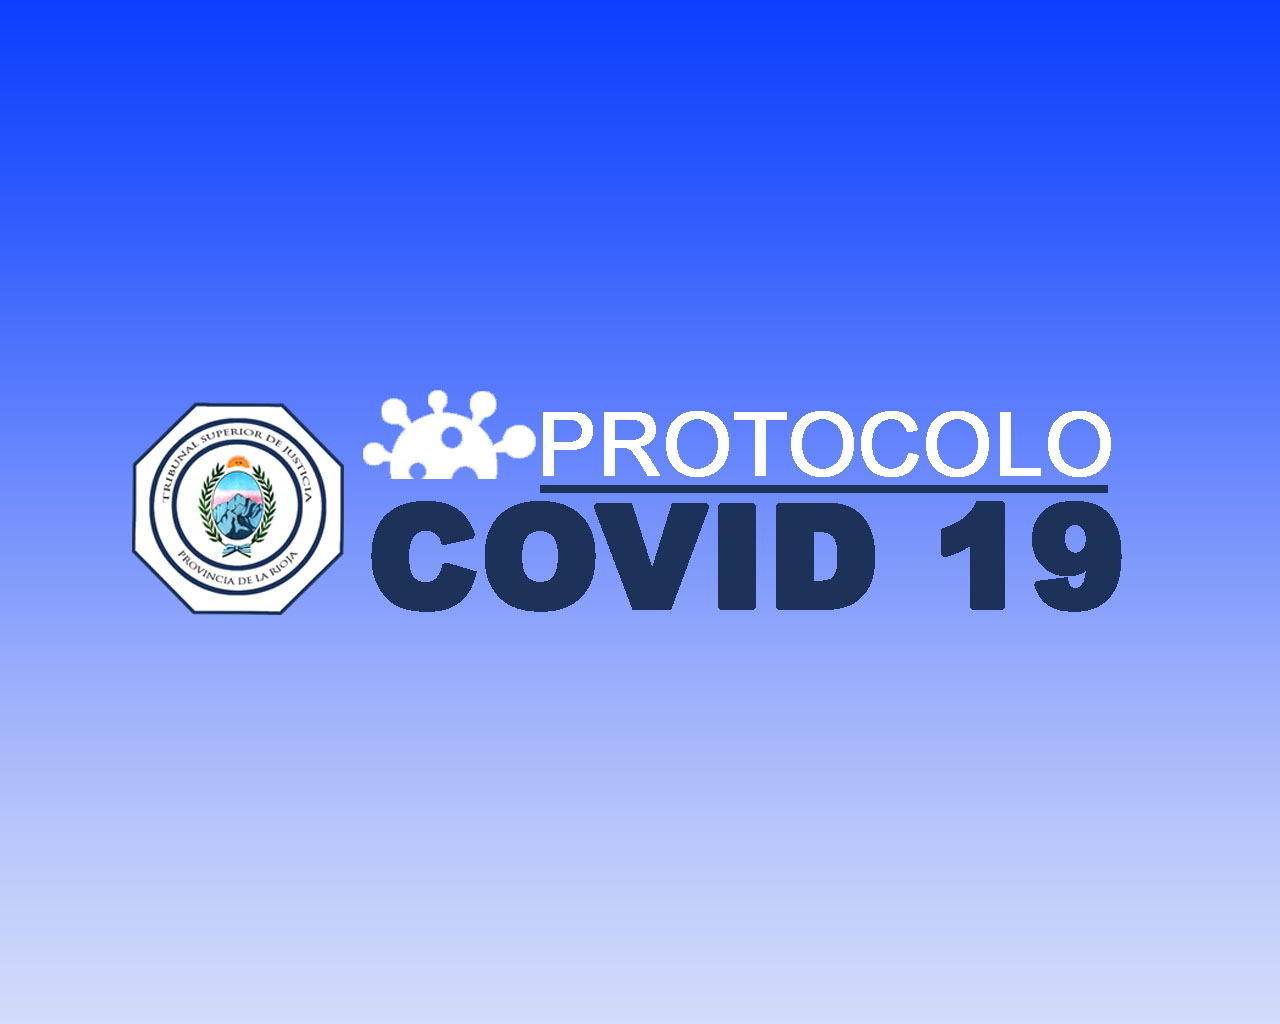 PROTOCOLO COVID 19